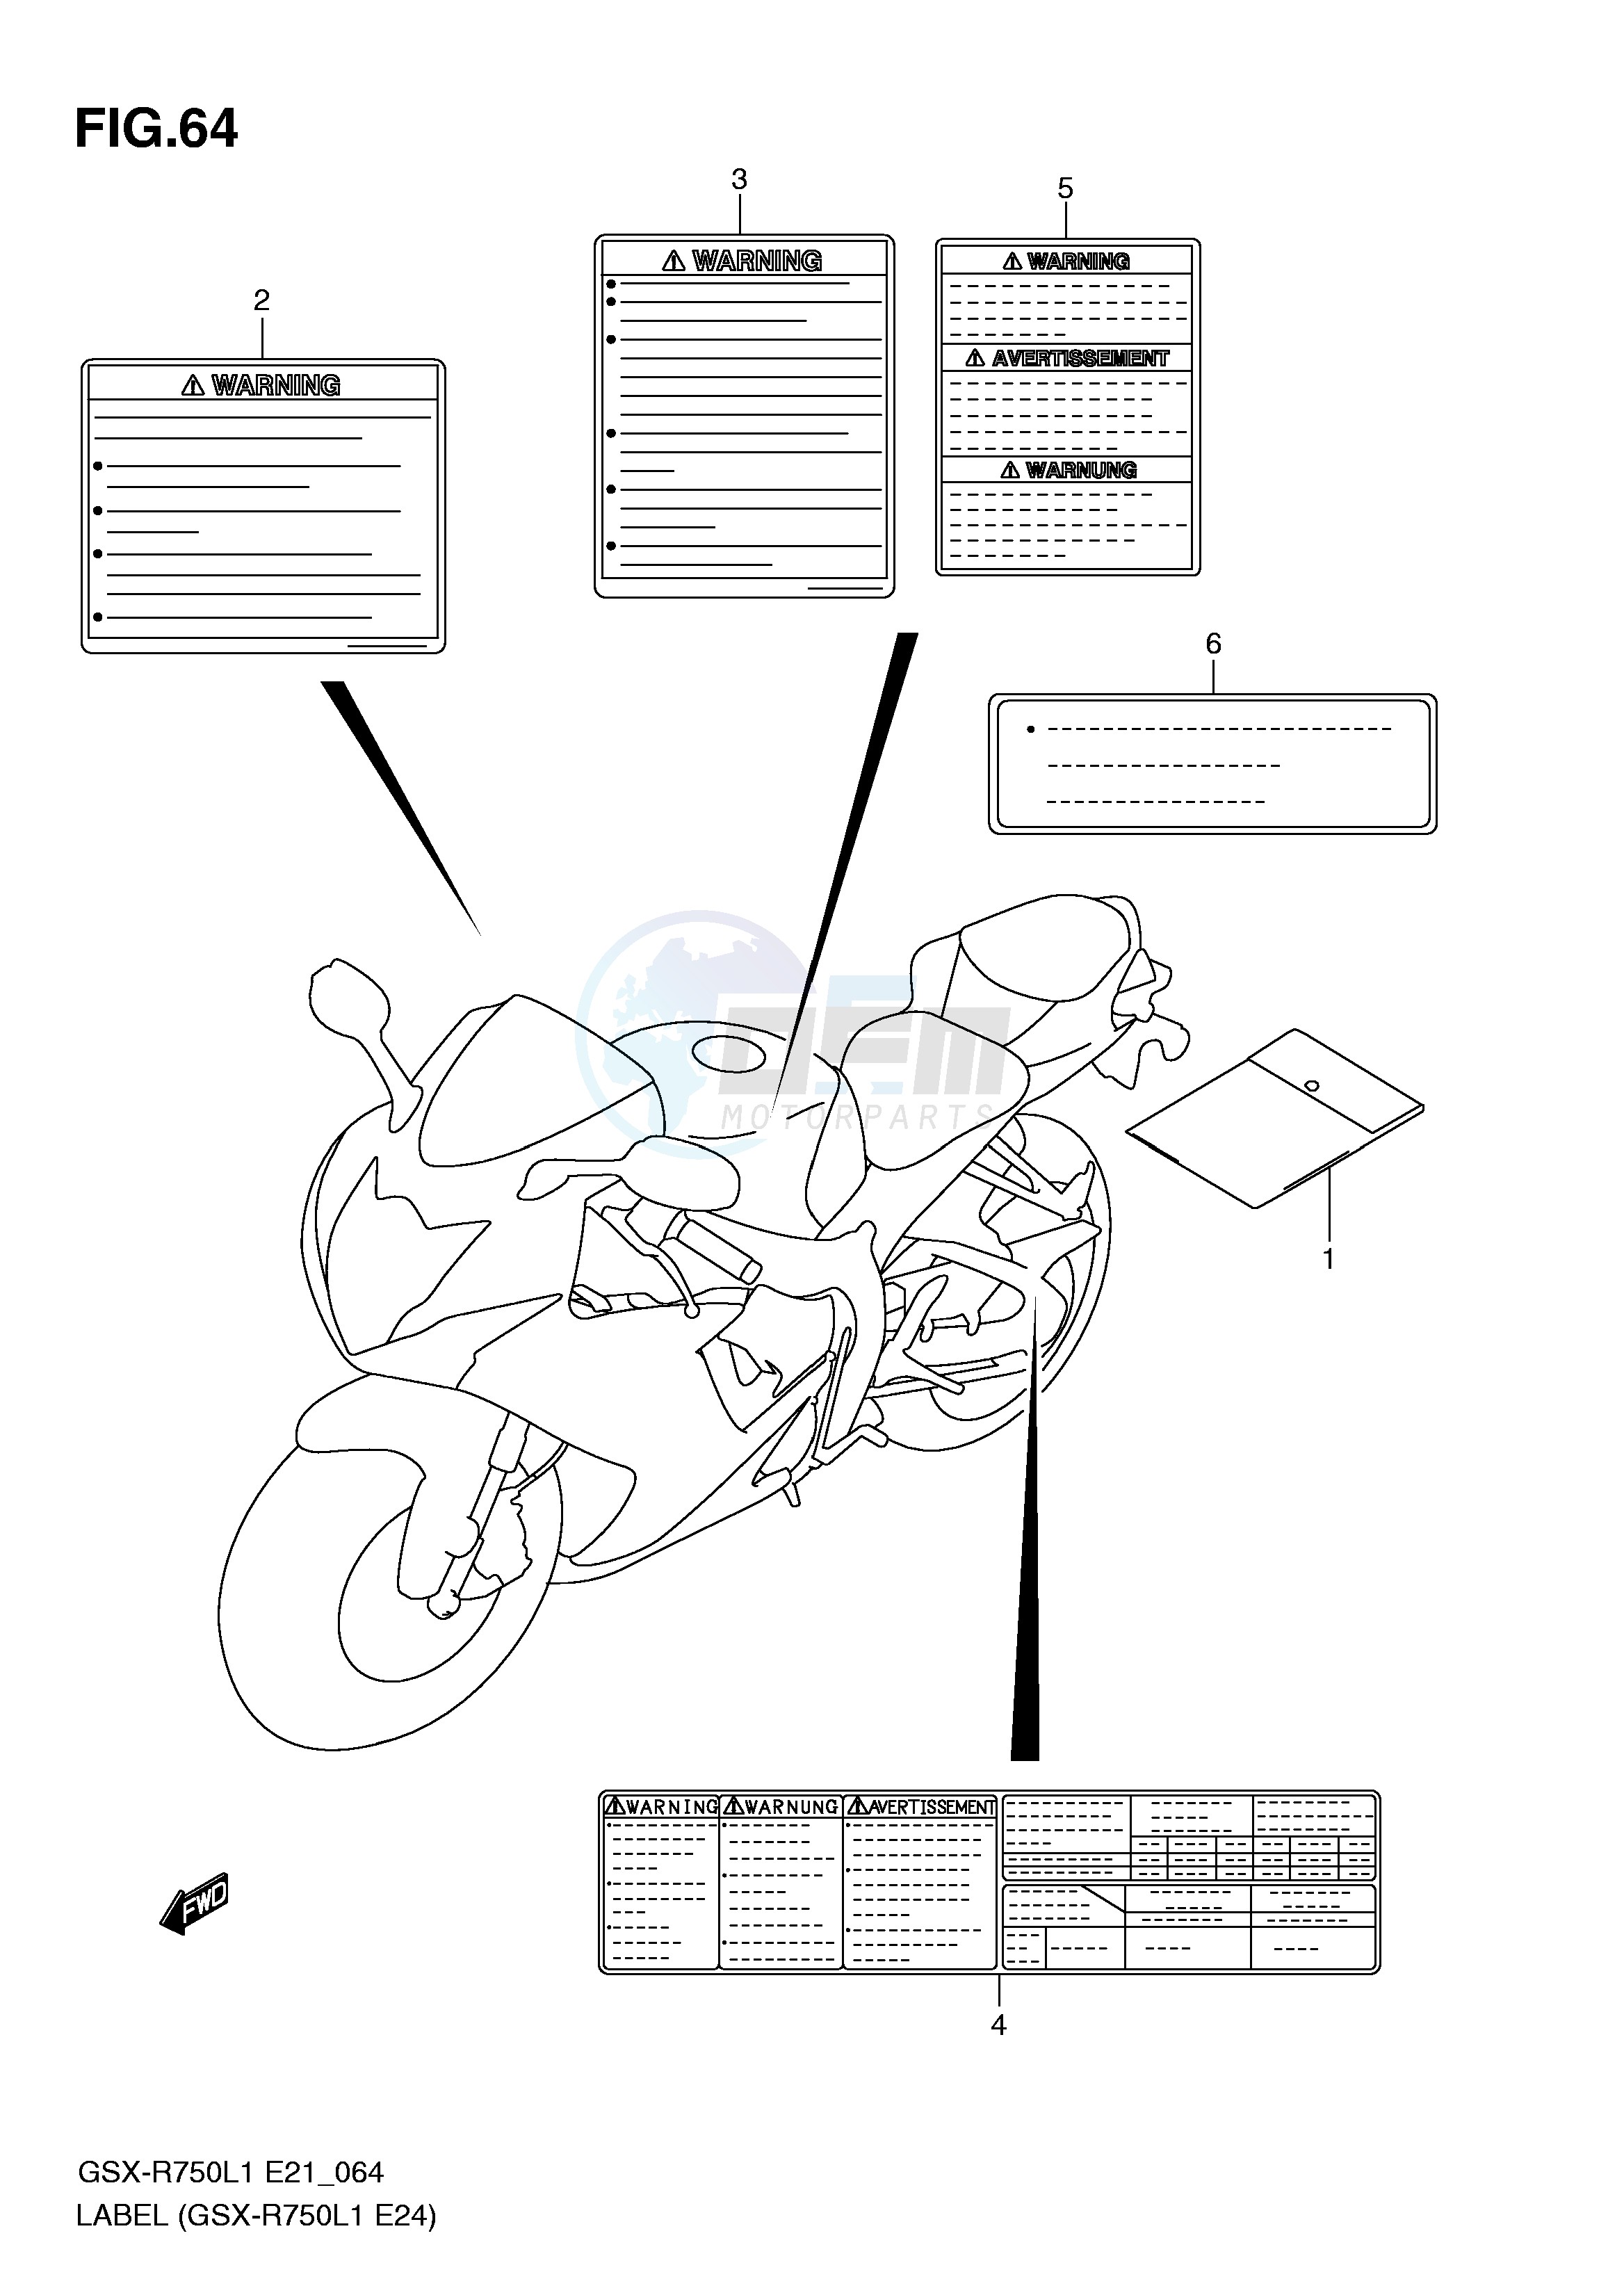 LABEL (GSX-R750L1 E24) blueprint